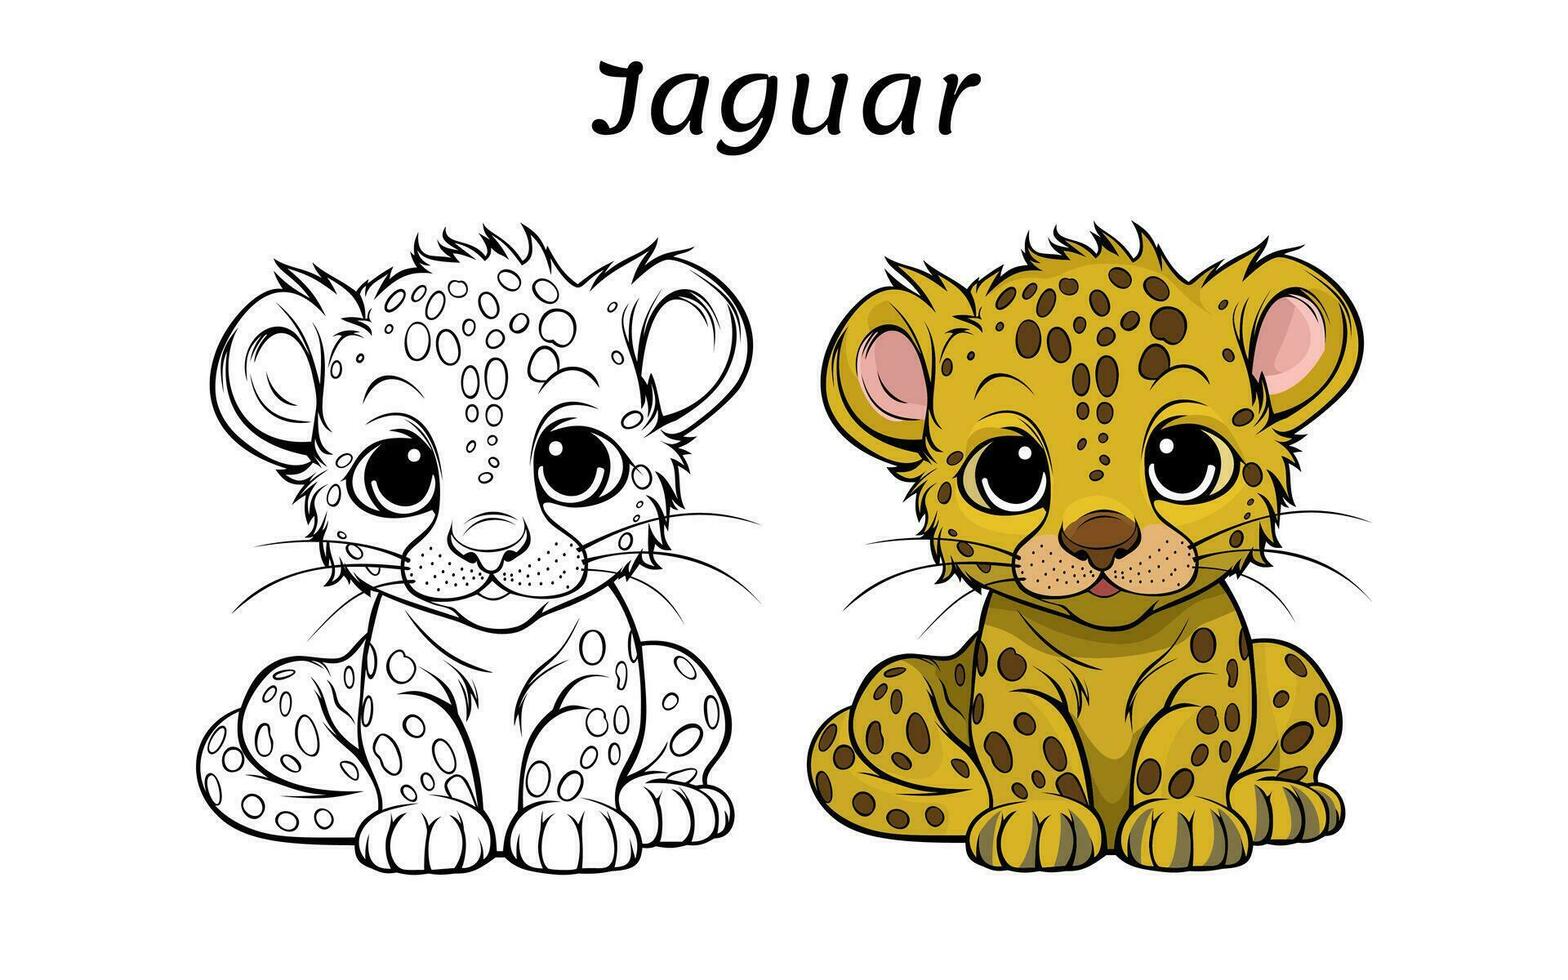 Cute Jaguar Animal Coloring Book Illustration vector